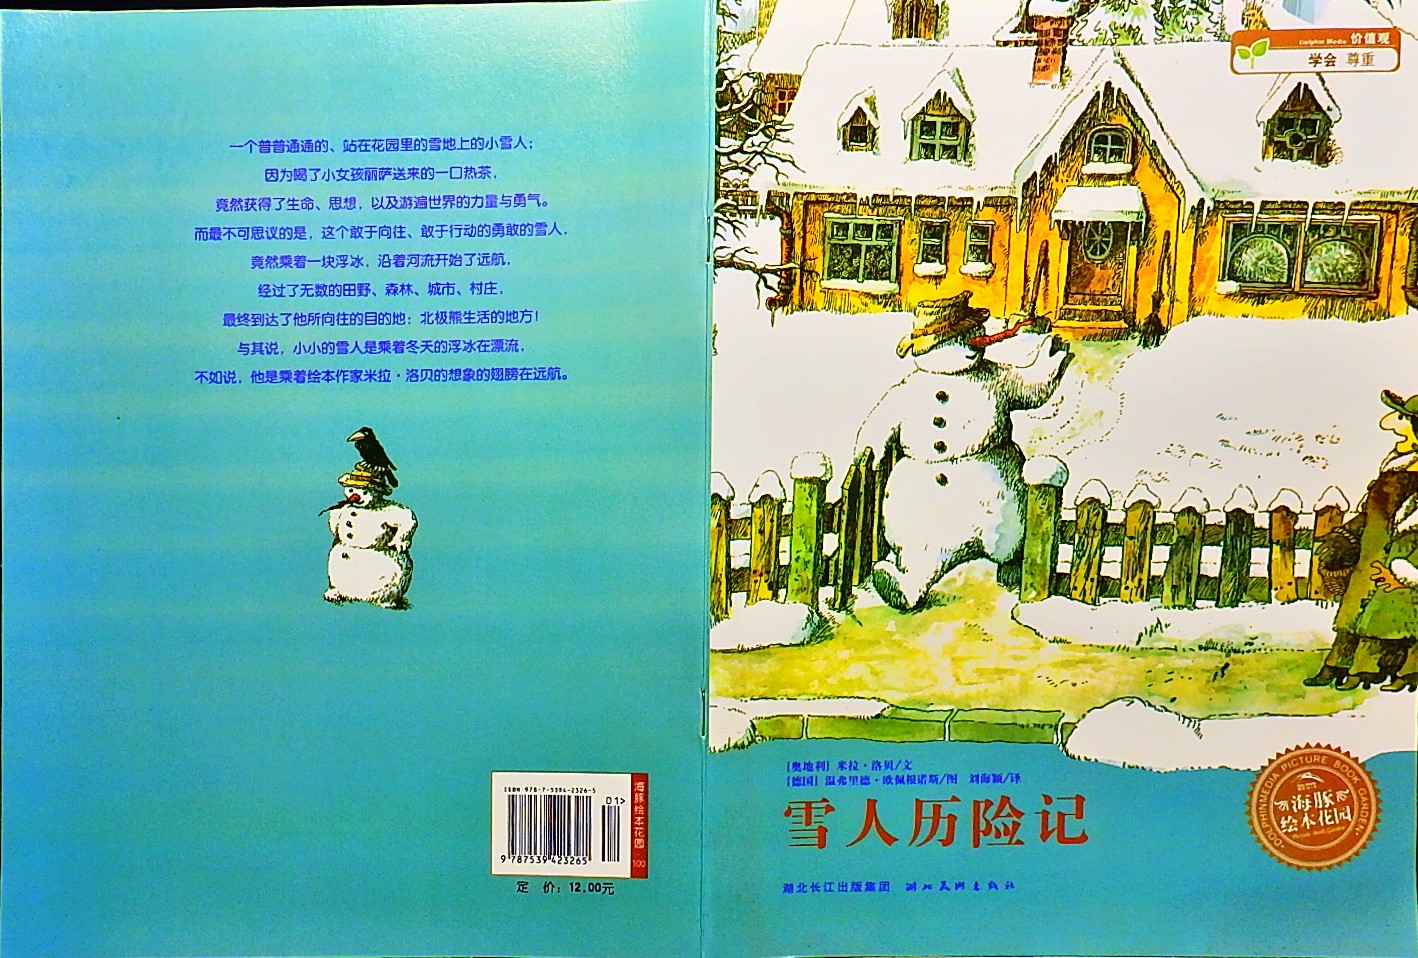 雪人历险记 (01),绘本,绘本故事,绘本阅读,故事书,童书,图画书,课外阅读